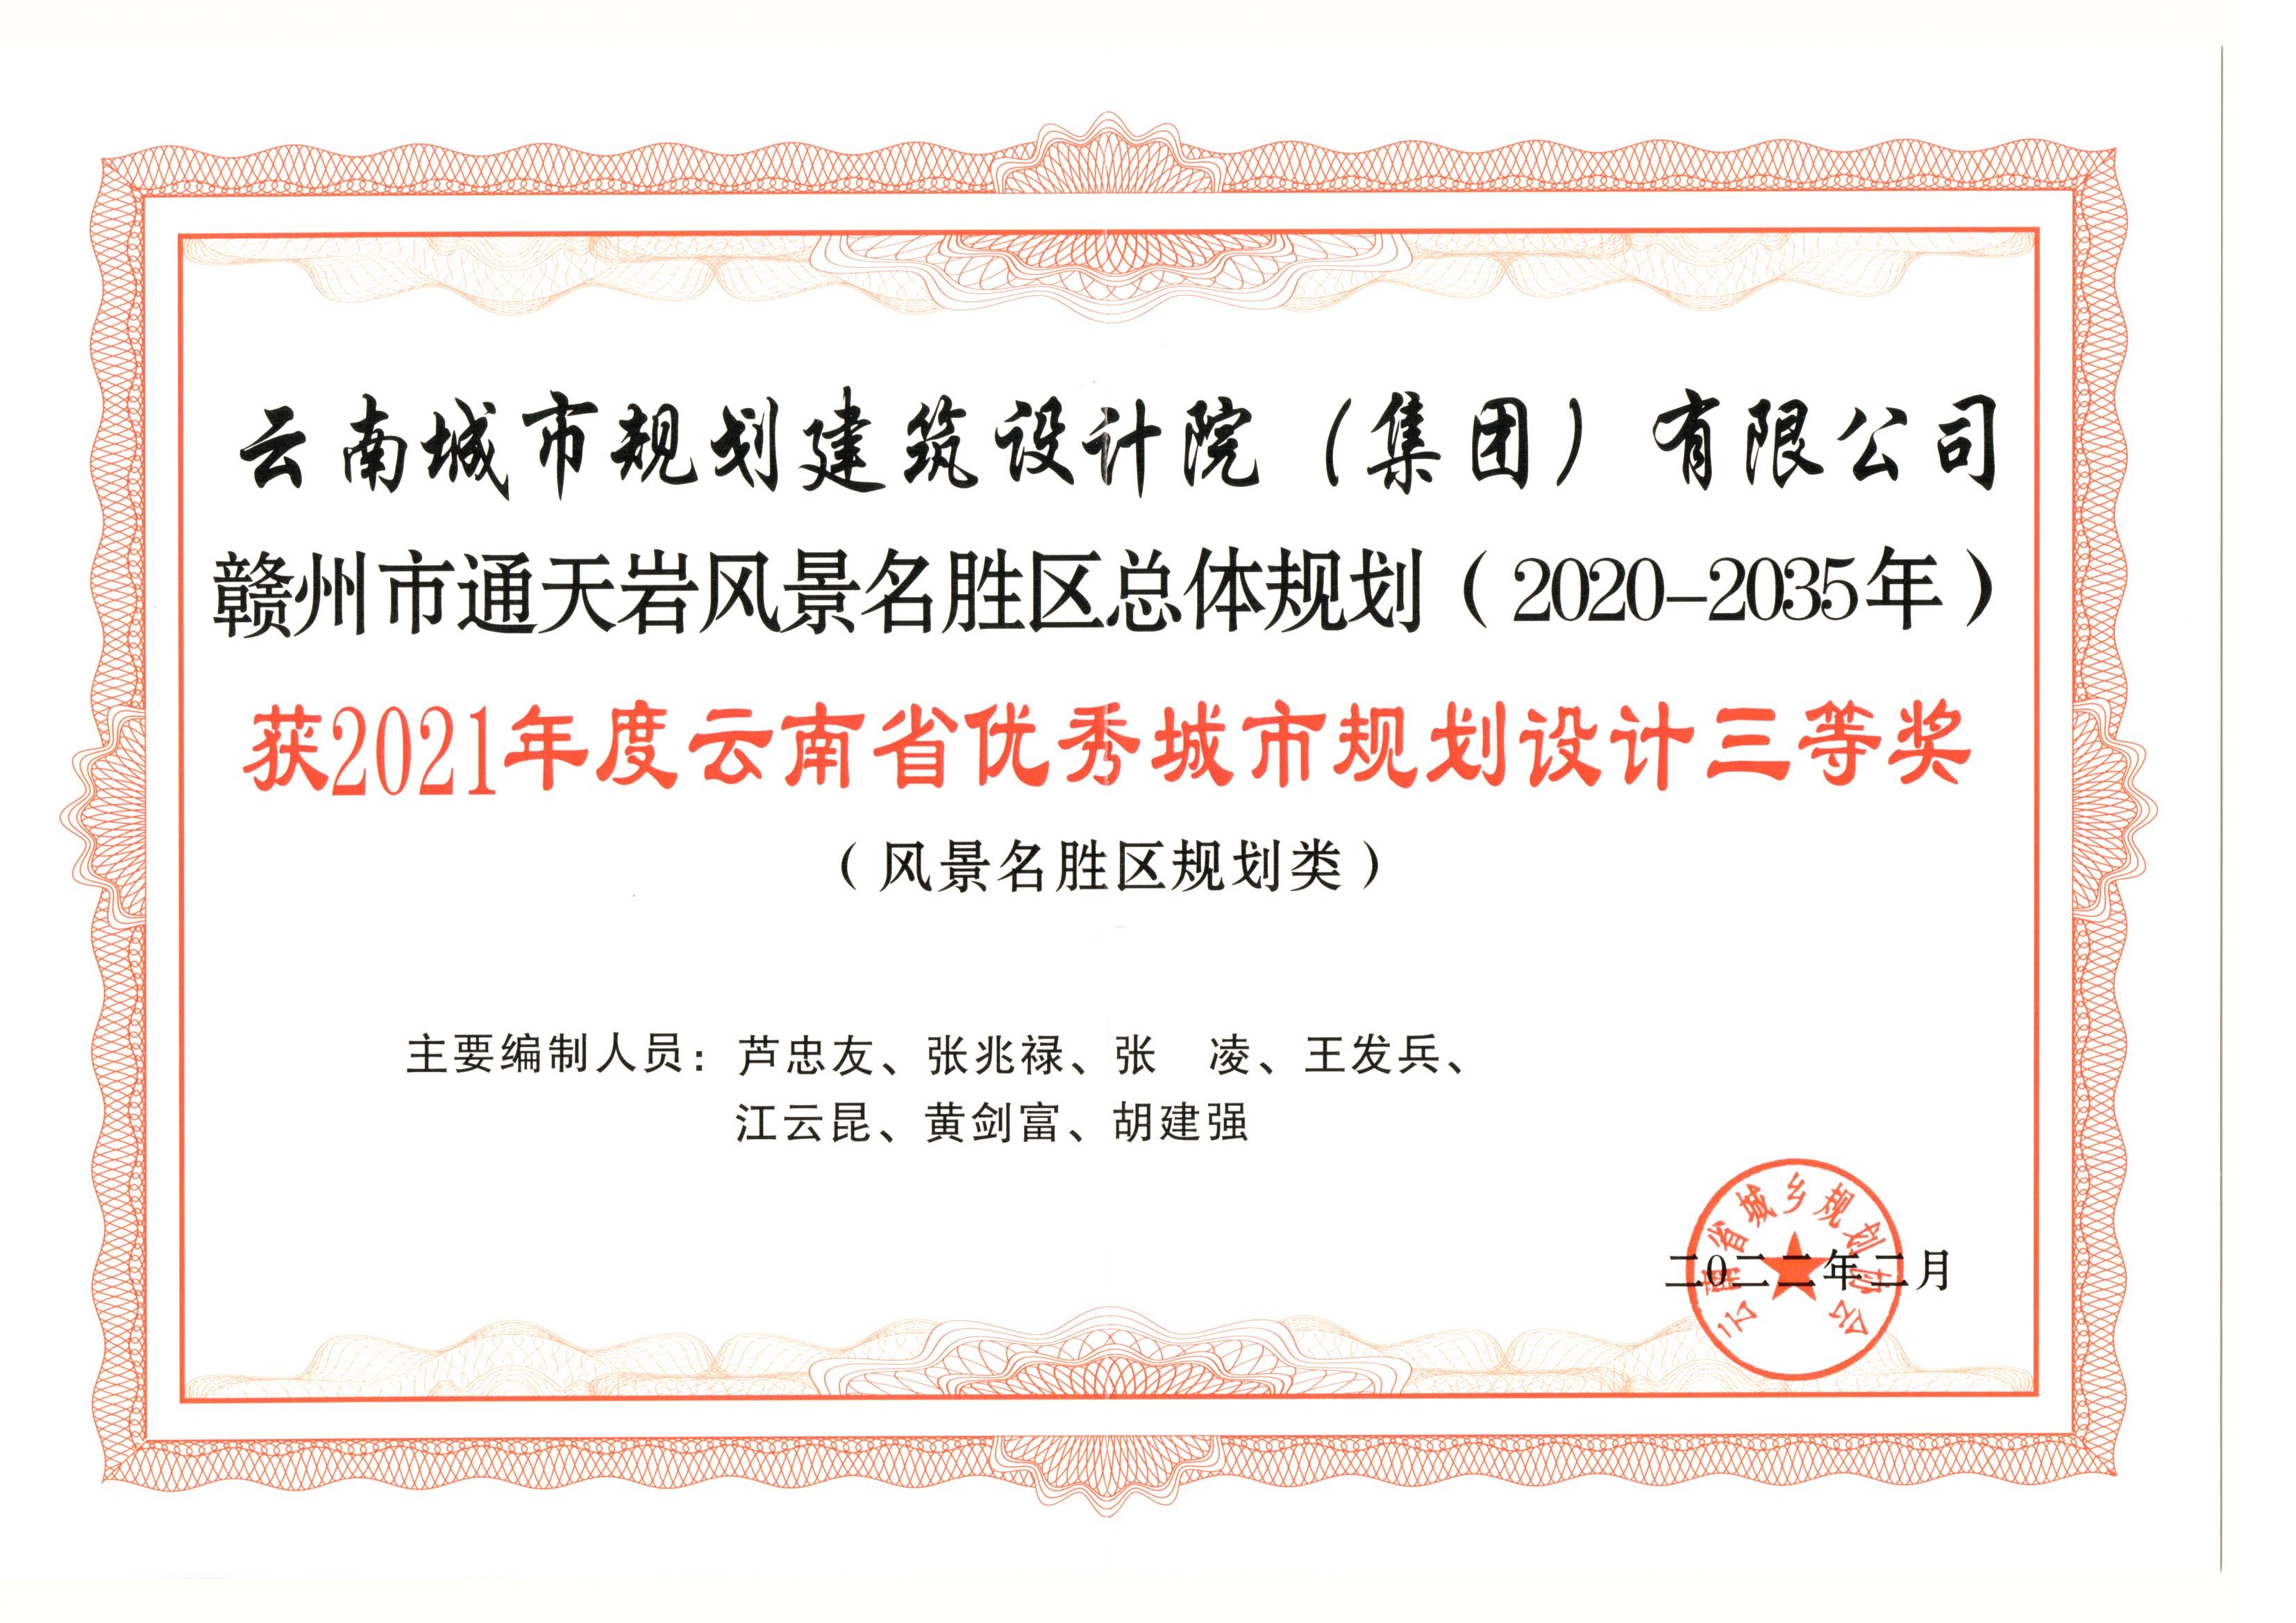 赣州市通天岩风景名胜区总体规划(2020-2035年)规划设计三等奖